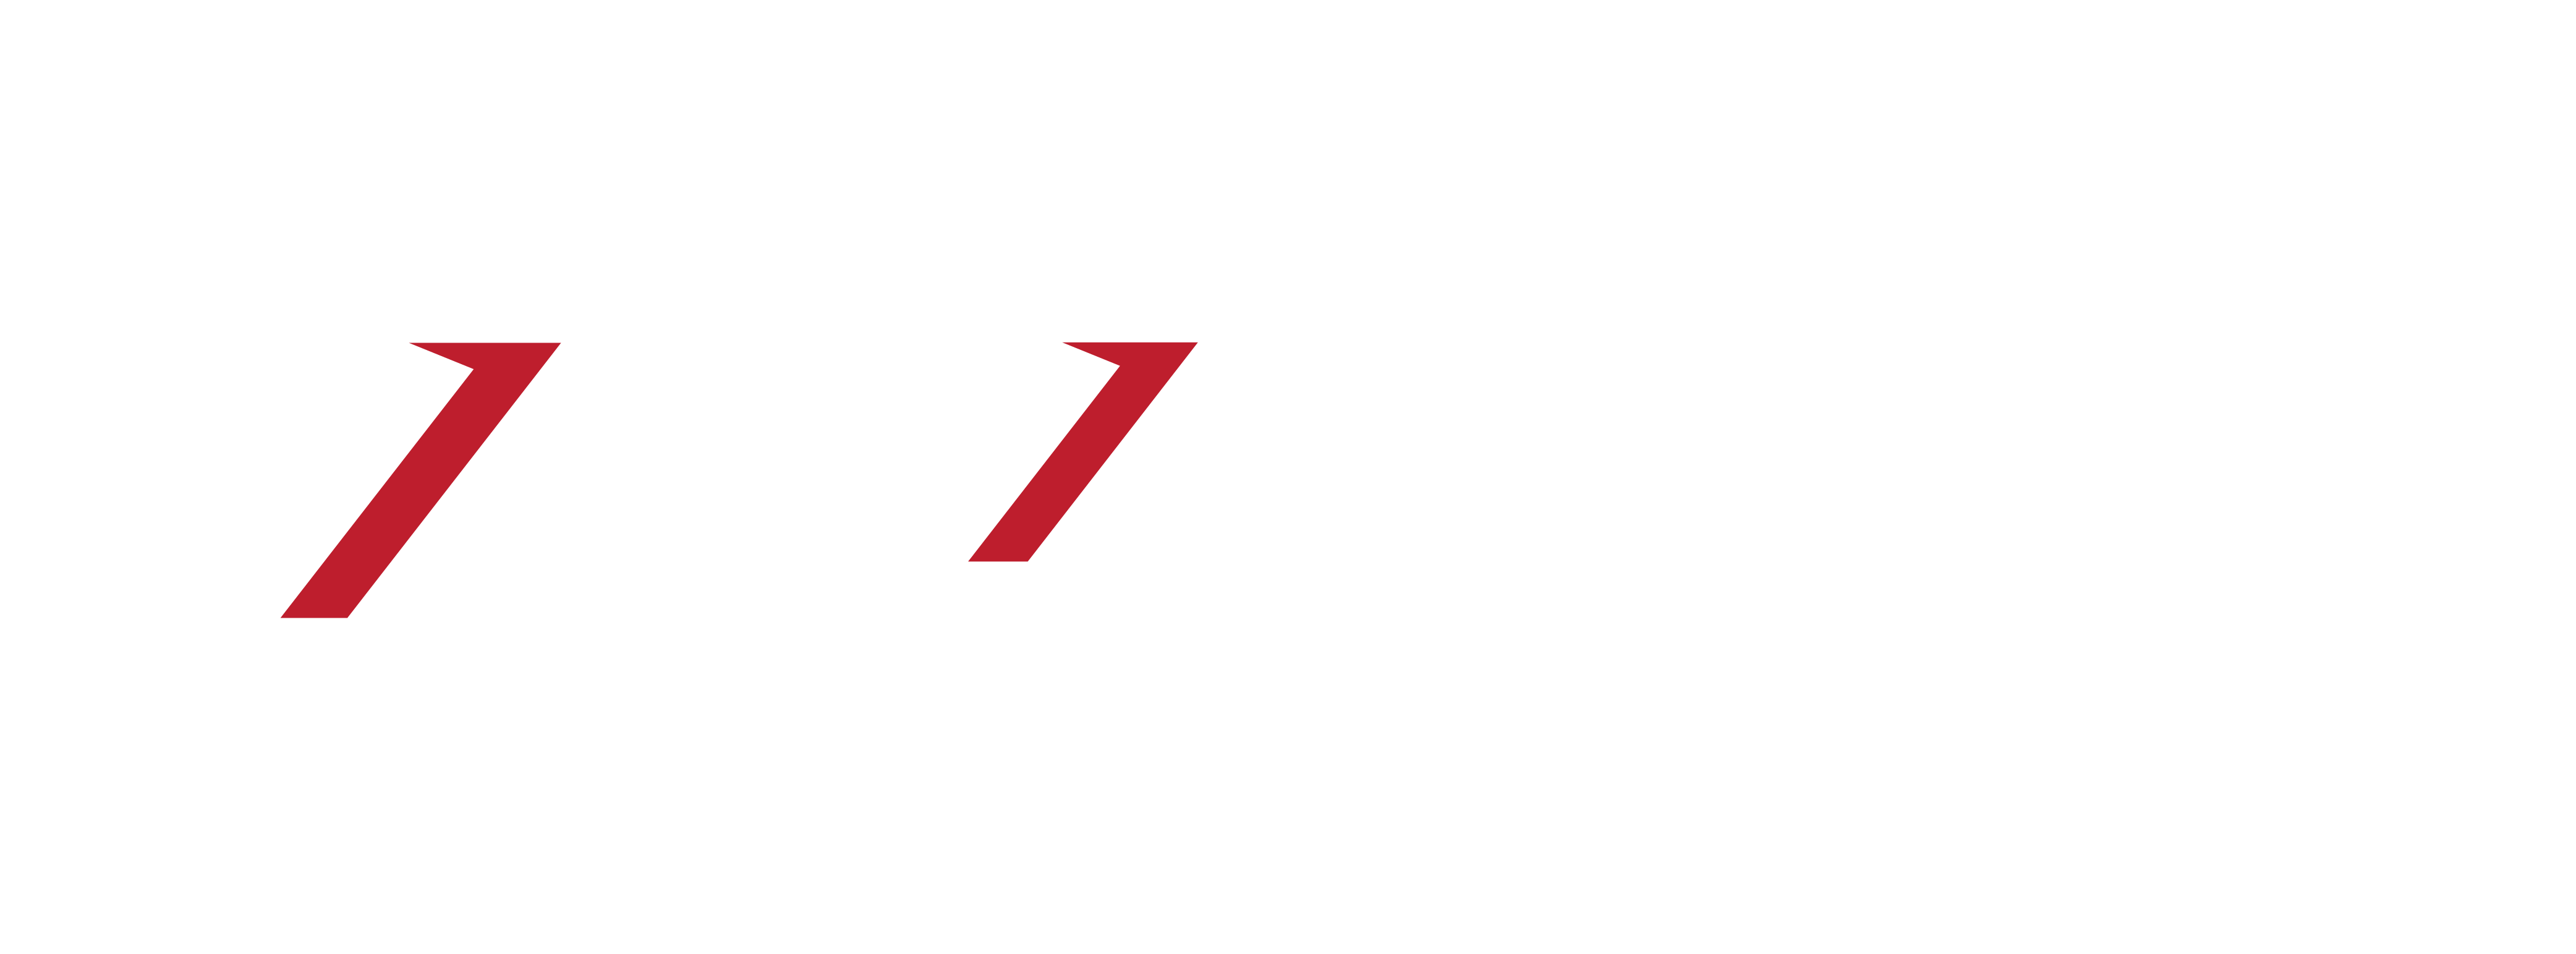 Impulse Motors Ltd Logo